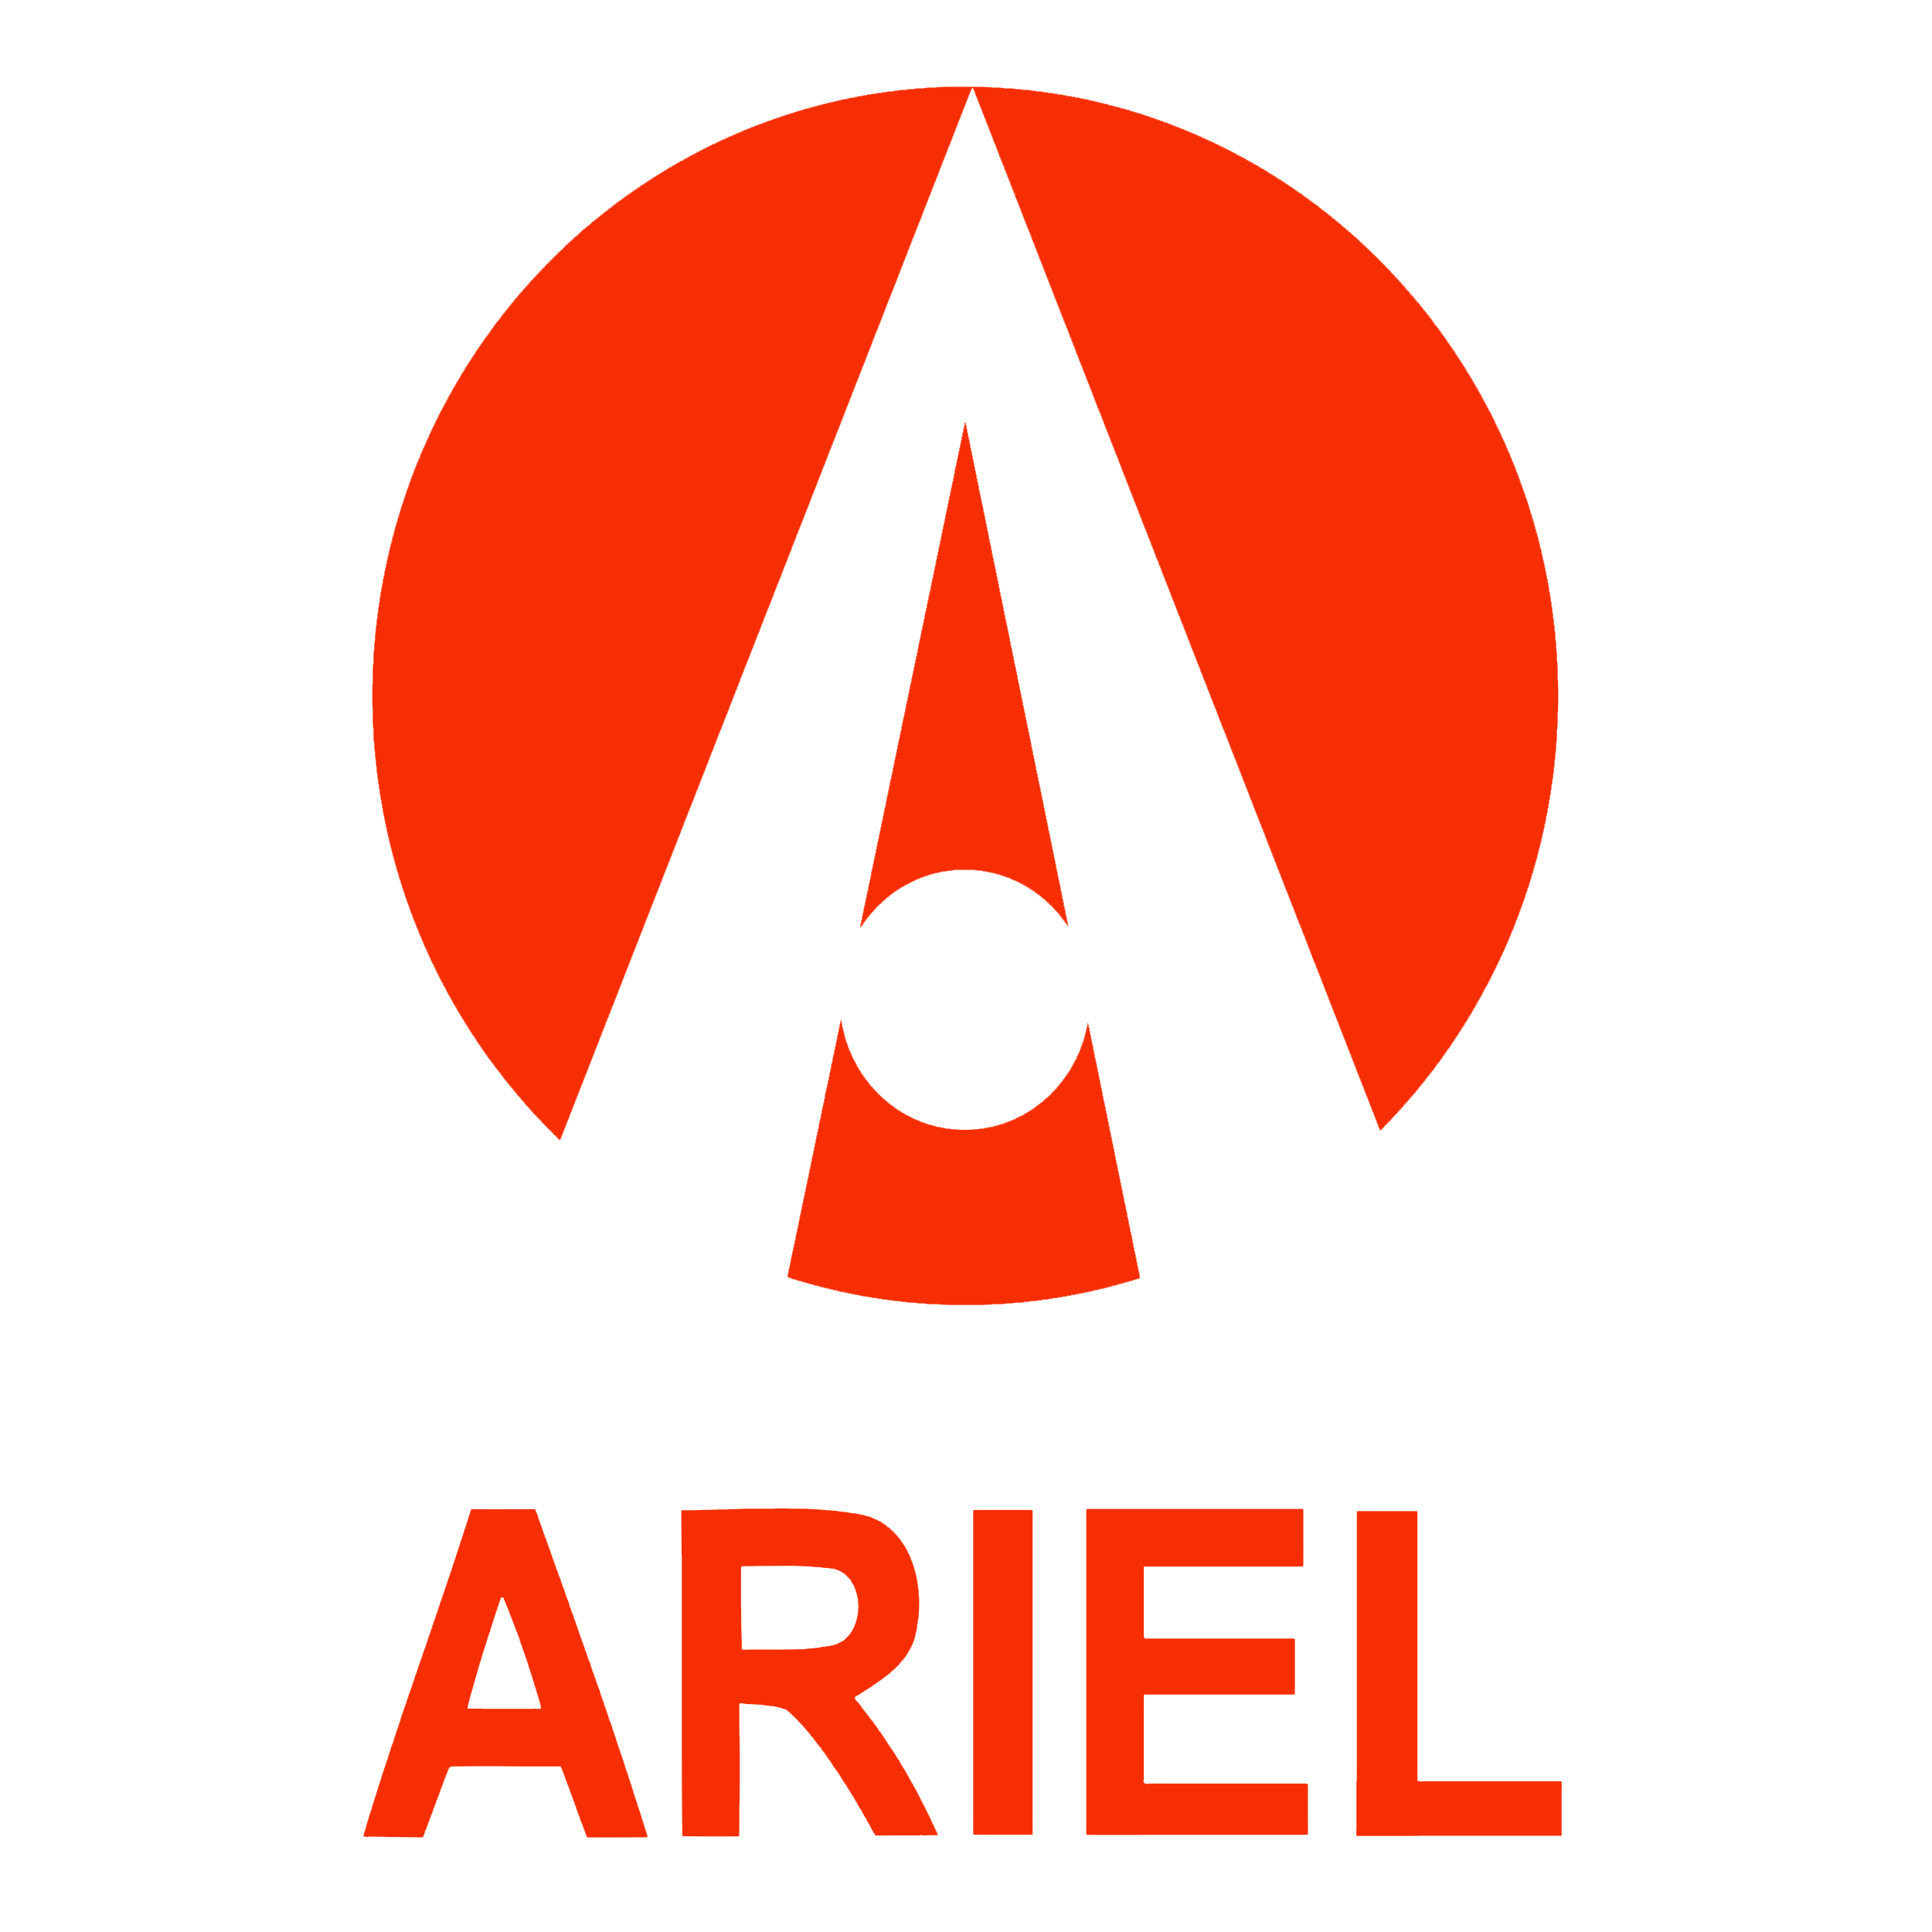 Ariel logo 2000 2500x2500